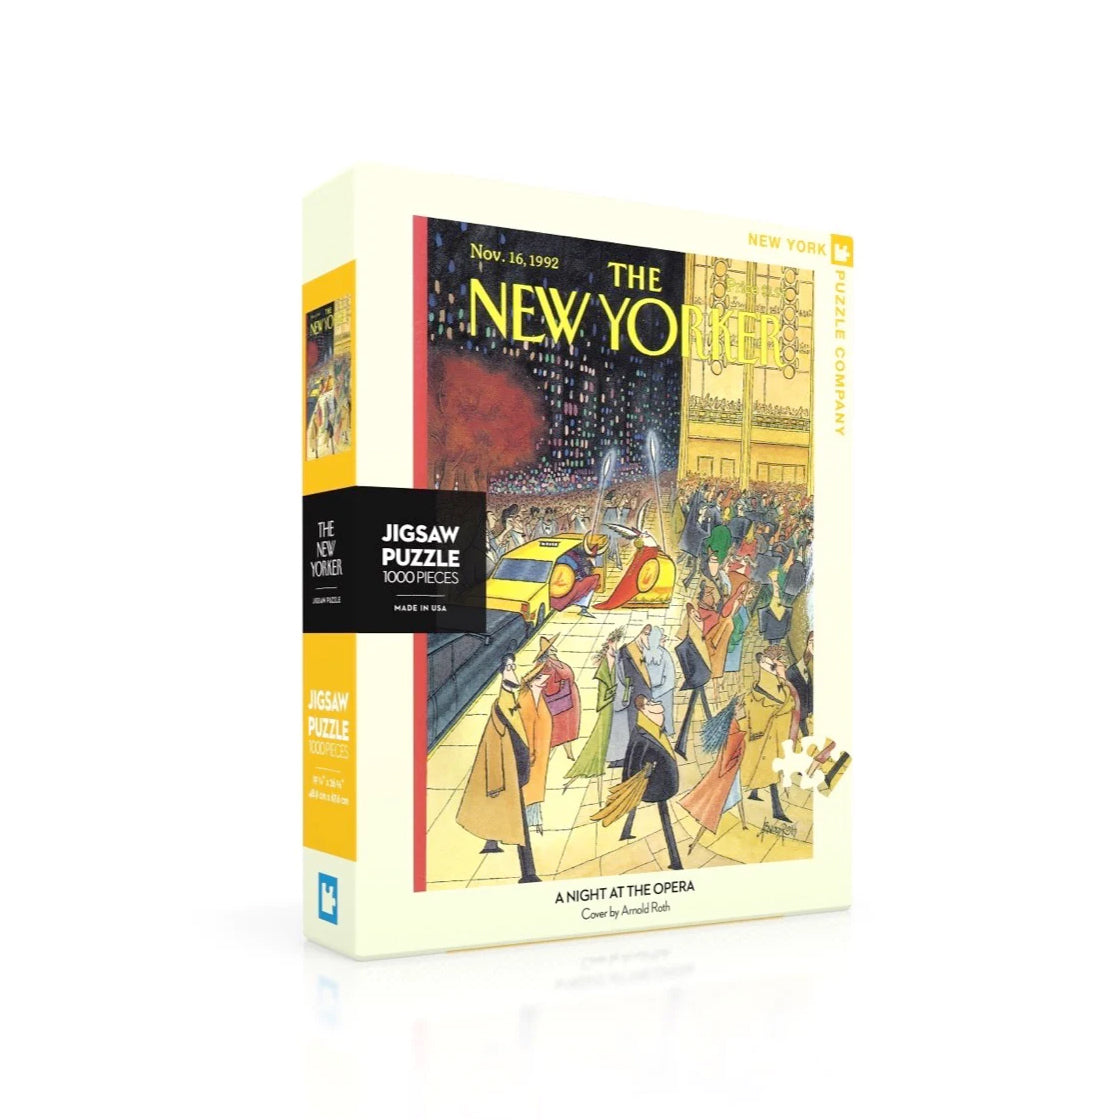 Puzzel The New Yorker│A Night at the opera 1000 stuks│New York Puzzle Company│art. NPZNY1956│verpakking met schaduw